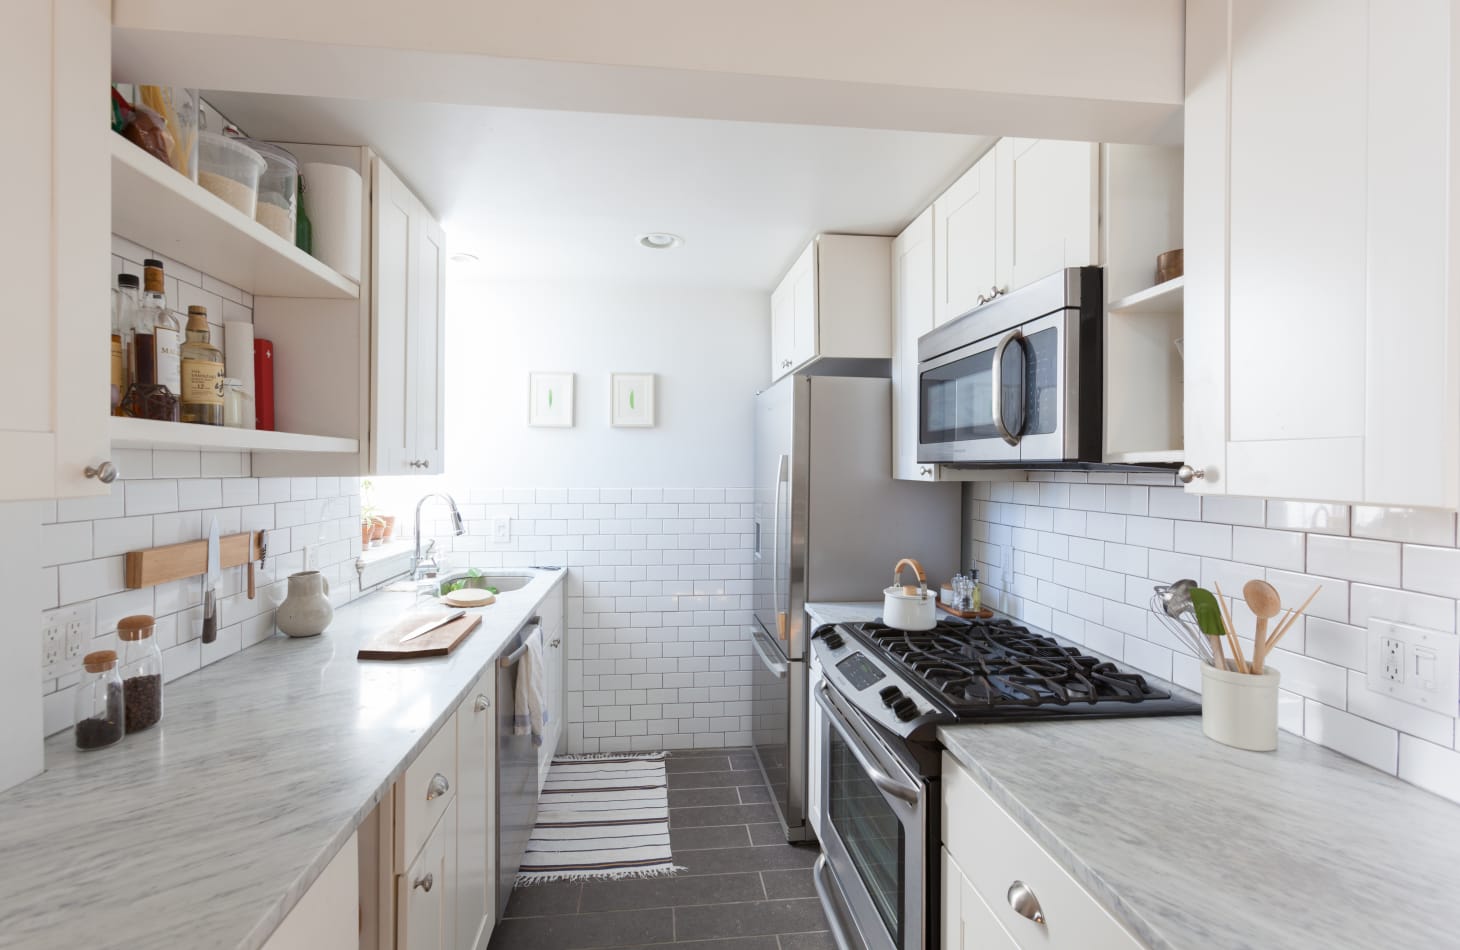 galley kitchen design photos